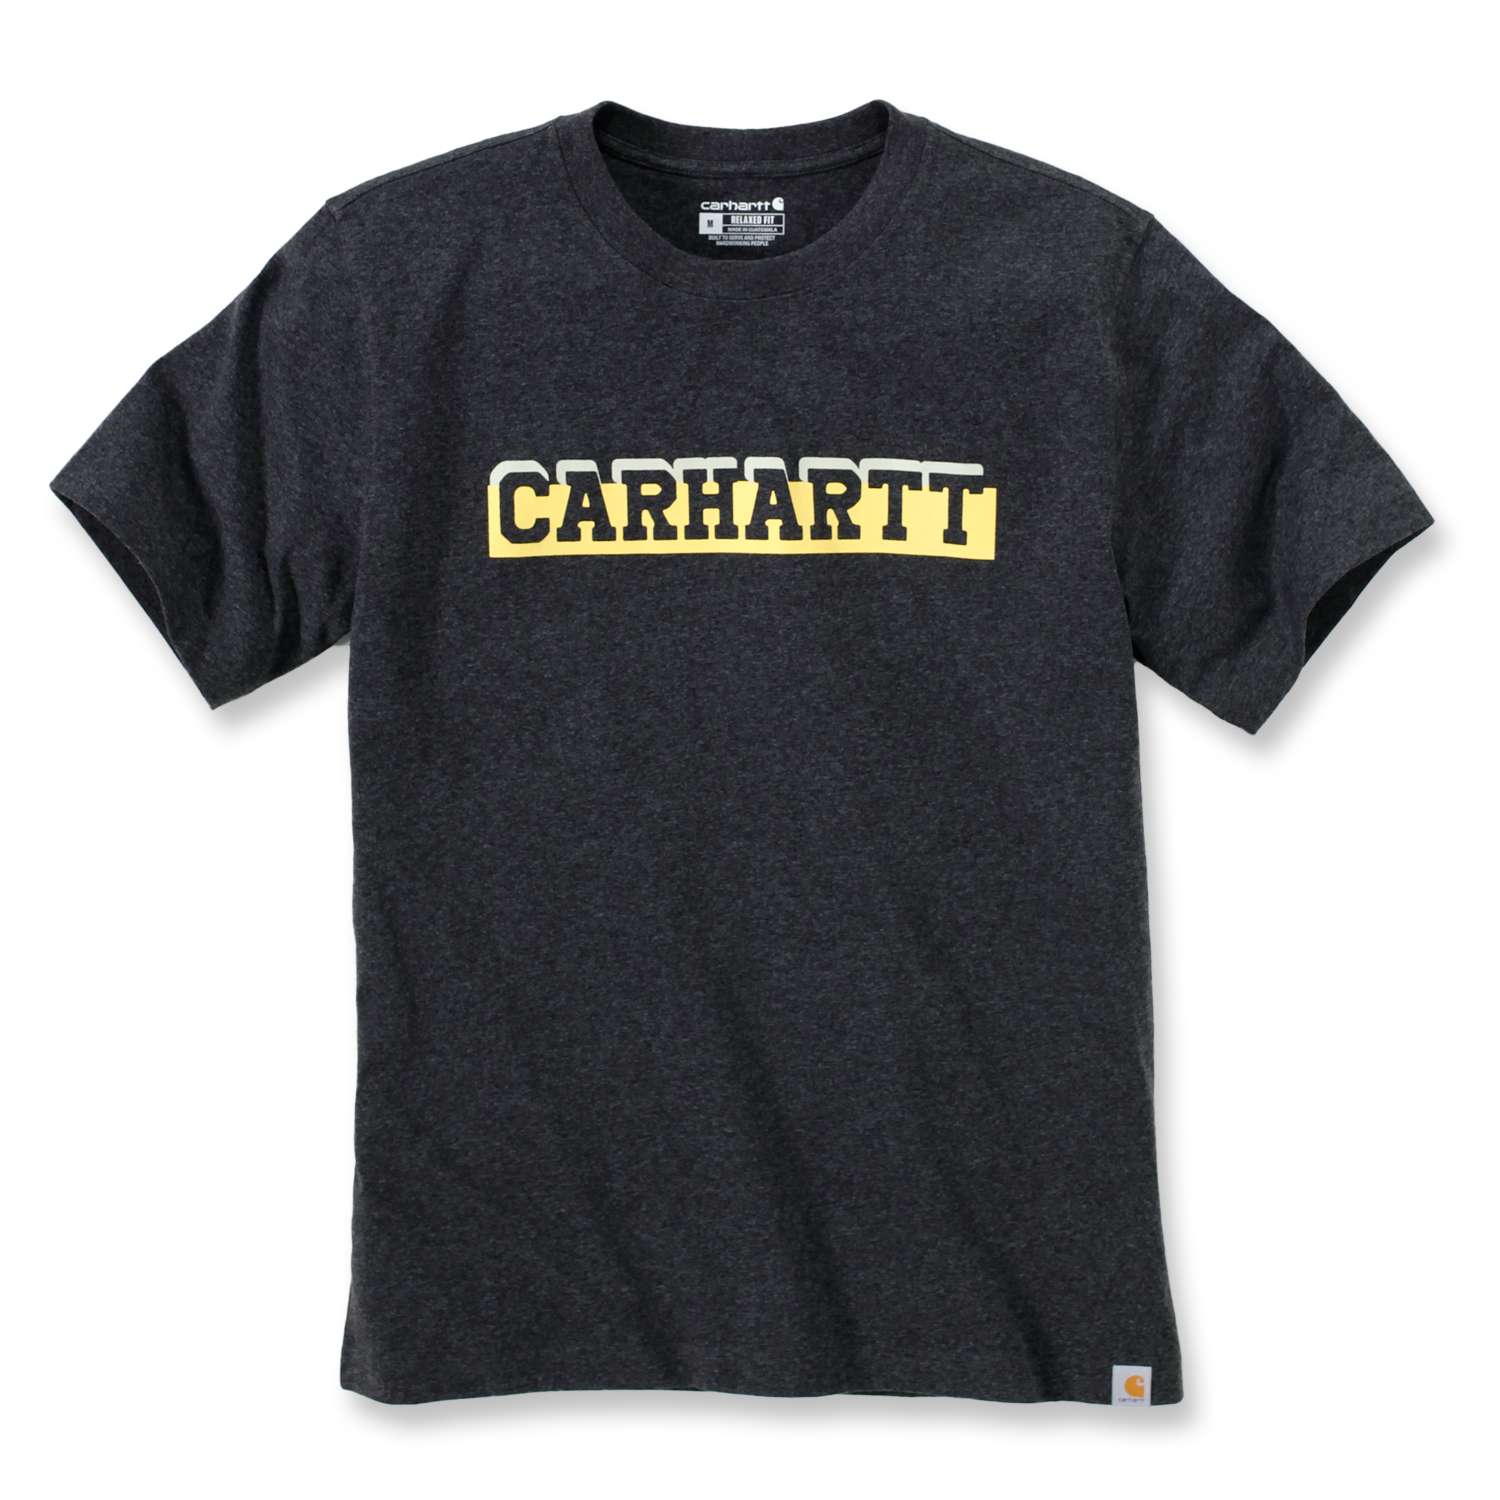 Kurzarm-T-Shirt mit Carhartt-Aufdruck